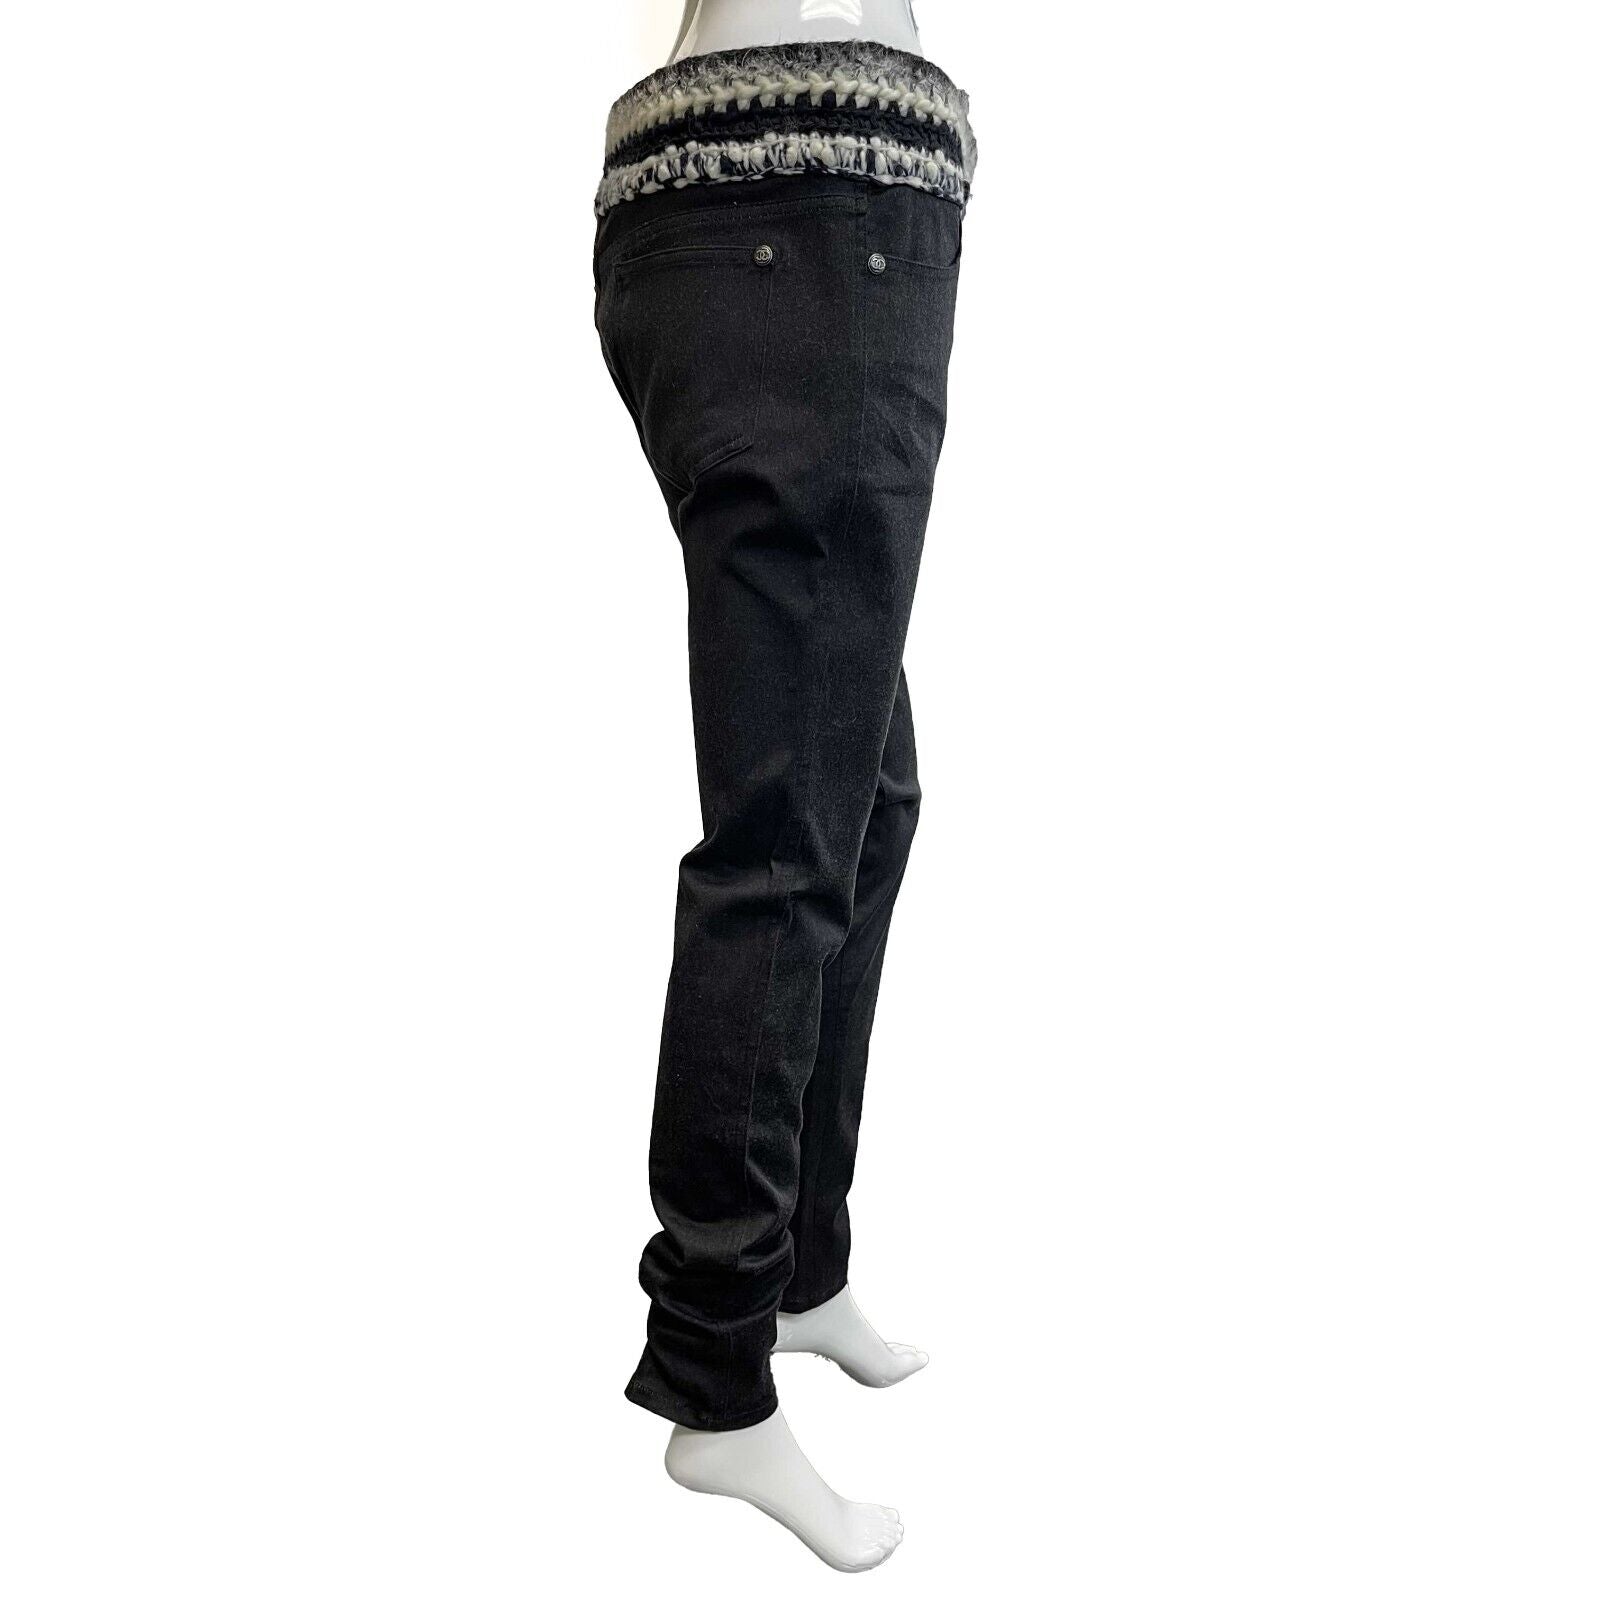 Chanel New w/o Tags Slim Pants Tweed 13B Black White 42 US 10 Grey